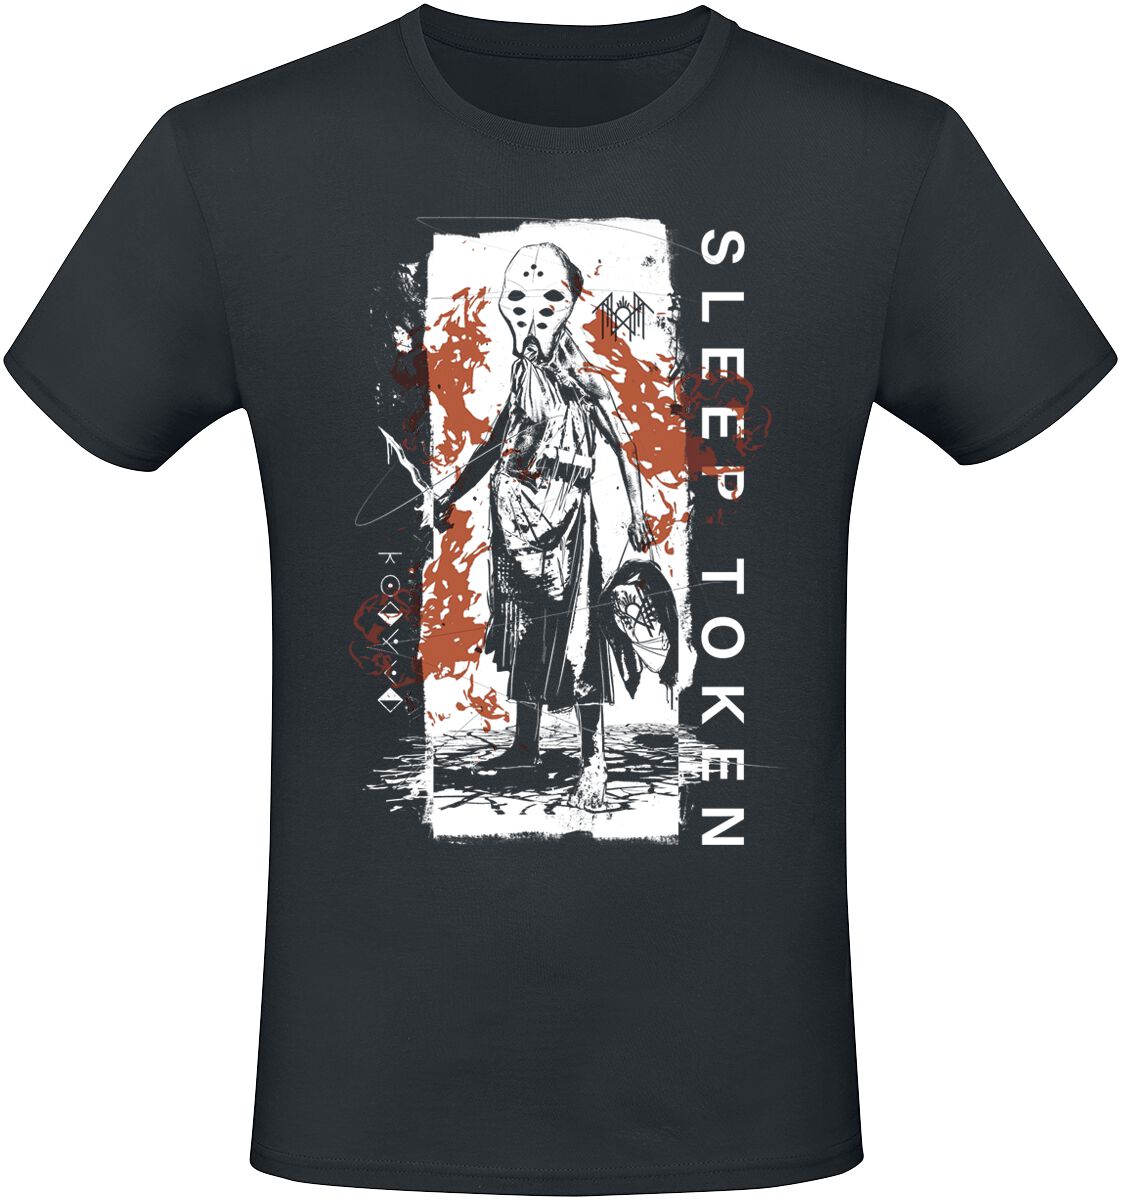 Sleep Token T-Shirt - Euclid - S bis 4XL - für Männer - Größe 4XL - schwarz  - EMP exklusives Merchandise!